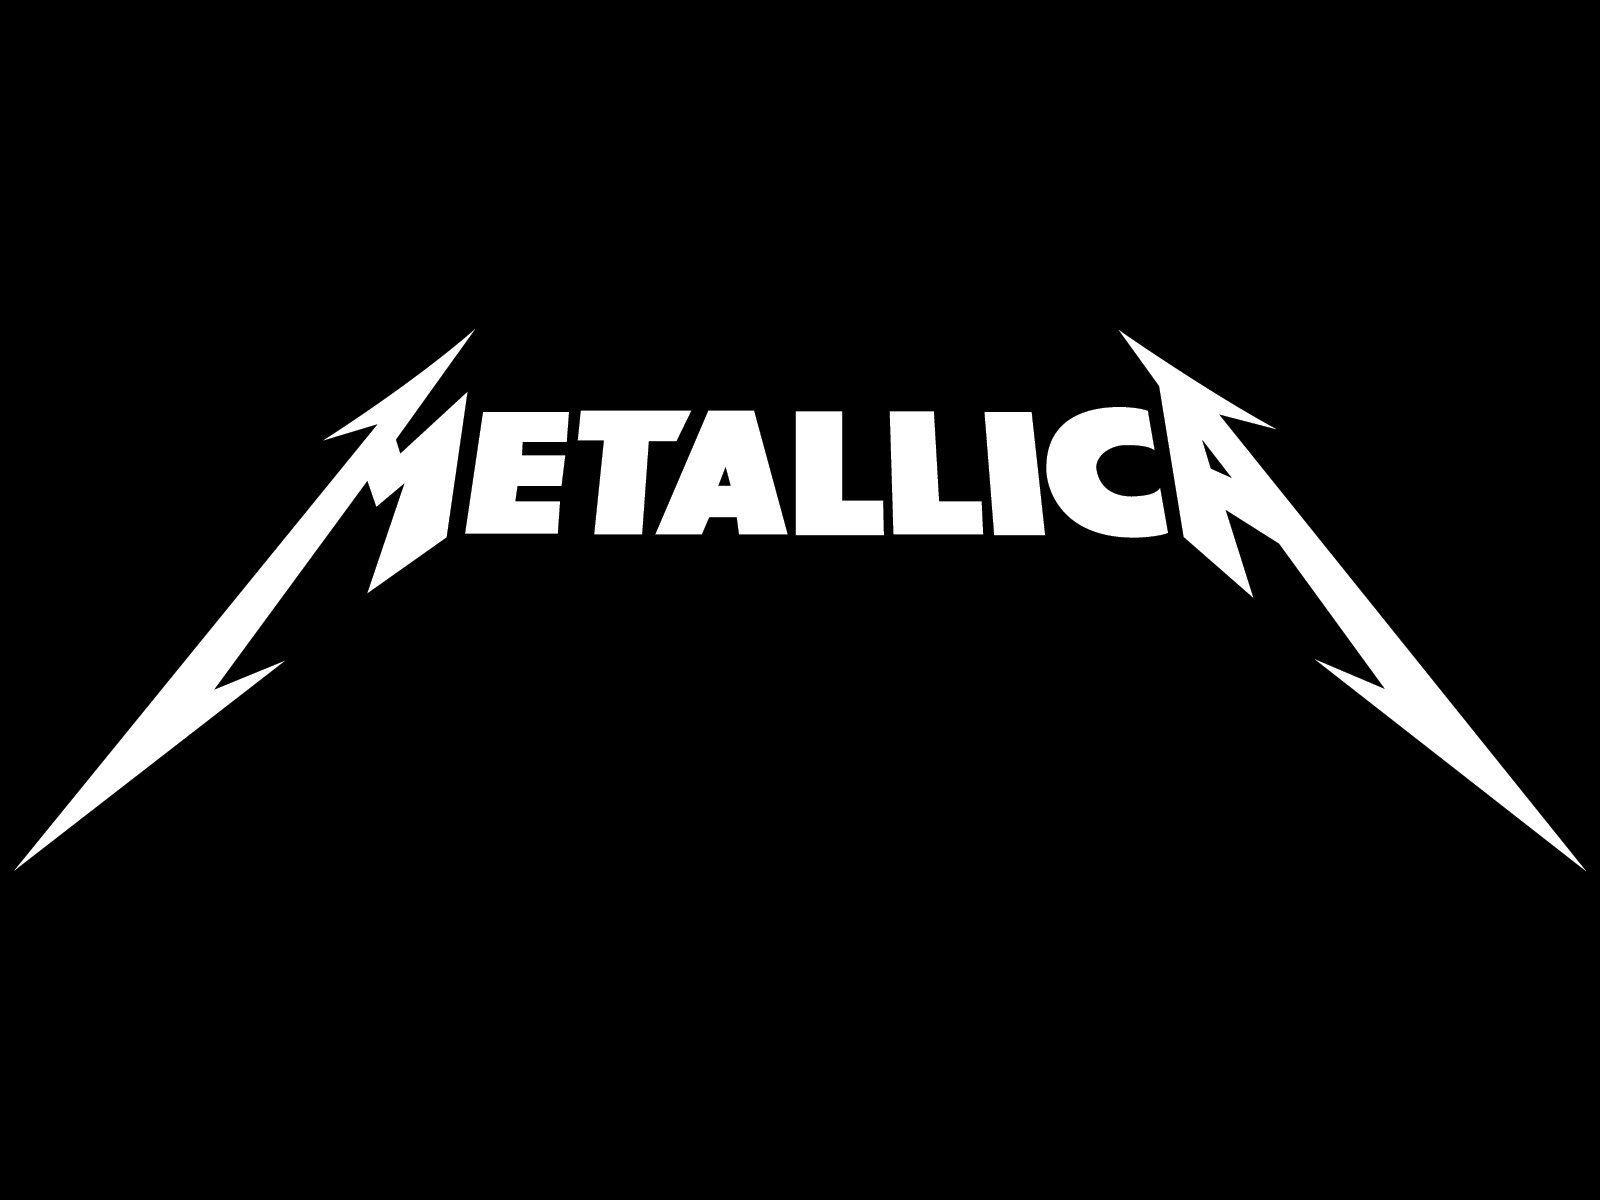 Tại WallpaperDog, bạn có thể truy cập vào rất nhiều loại hình nền Metallica đa dạng và phong phú. Chất lượng và độ phân giải tuyệt đẹp sẽ khiến bạn ngất ngây. Dành chút thời gian để khám phá những tác phẩm nghệ thuật đặc sắc này nhé.